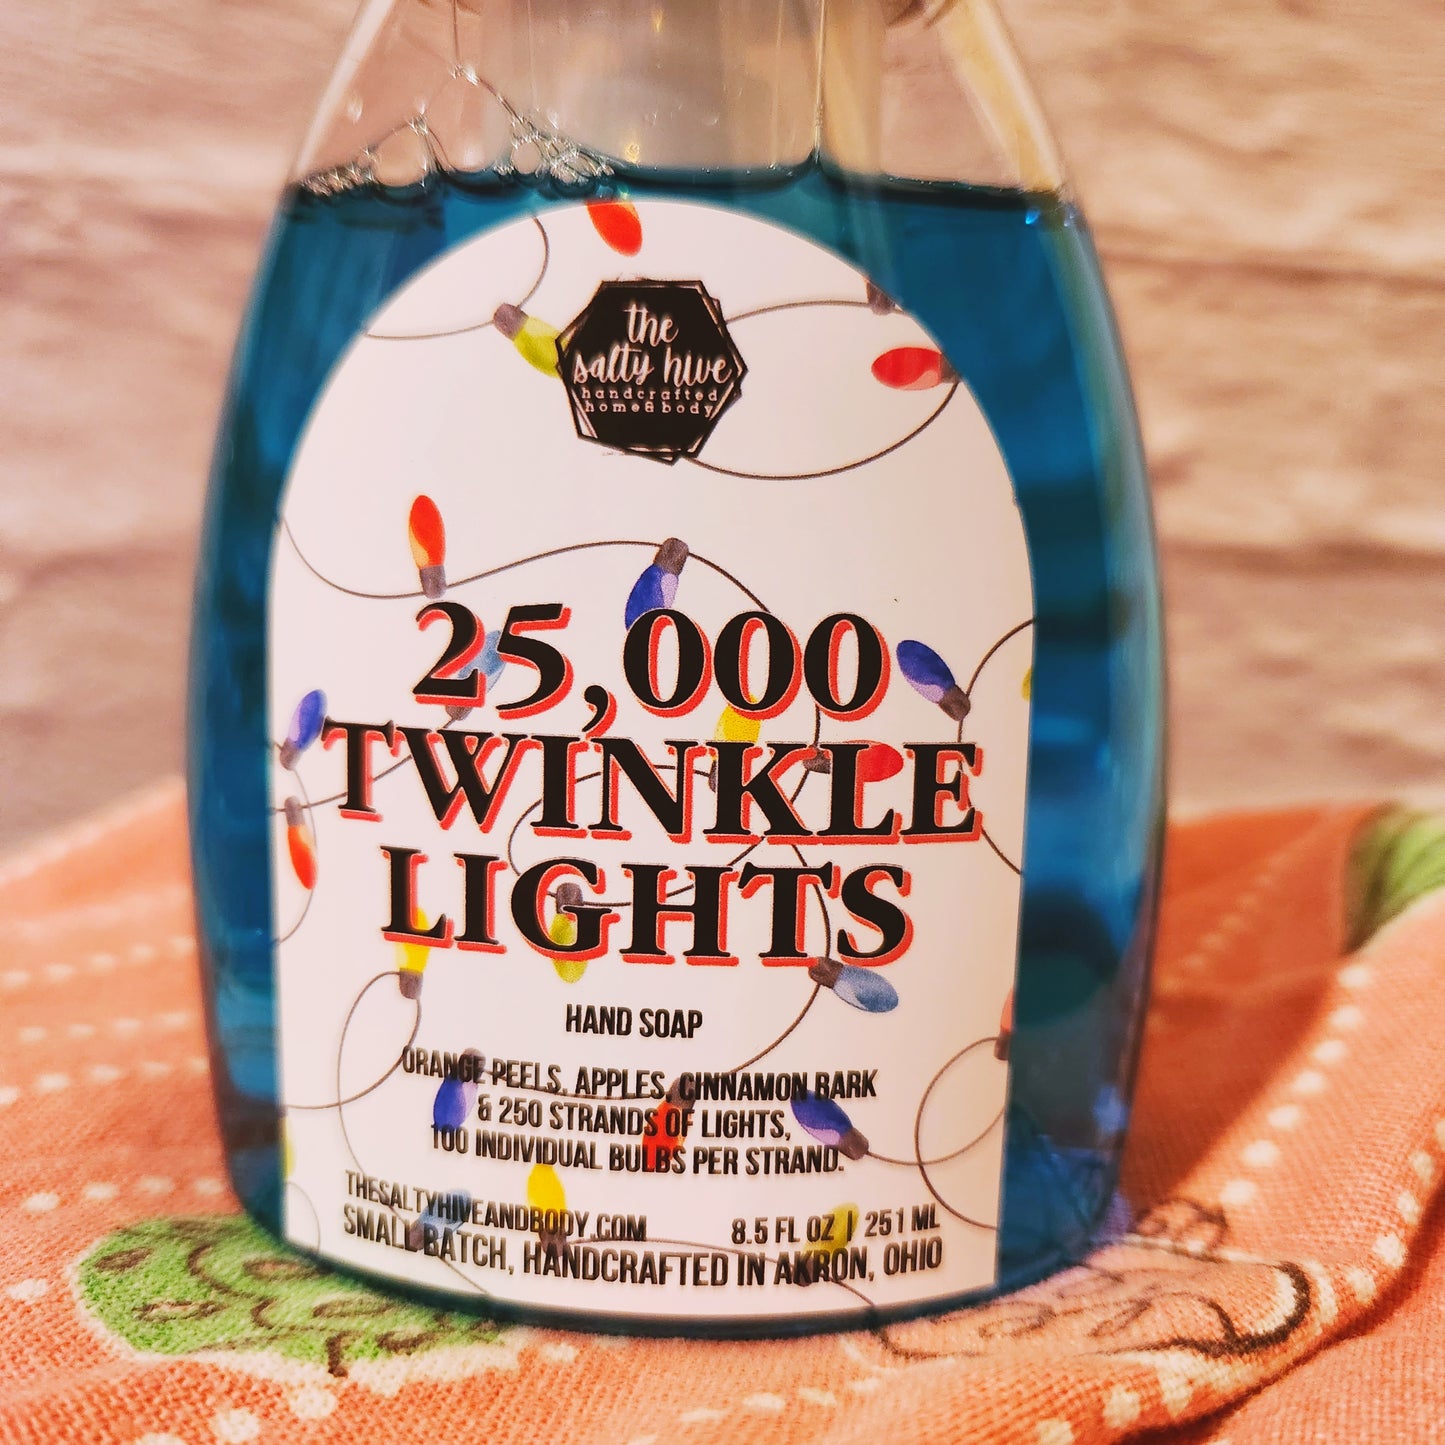 25,000 twinkle lights foaming hand soap